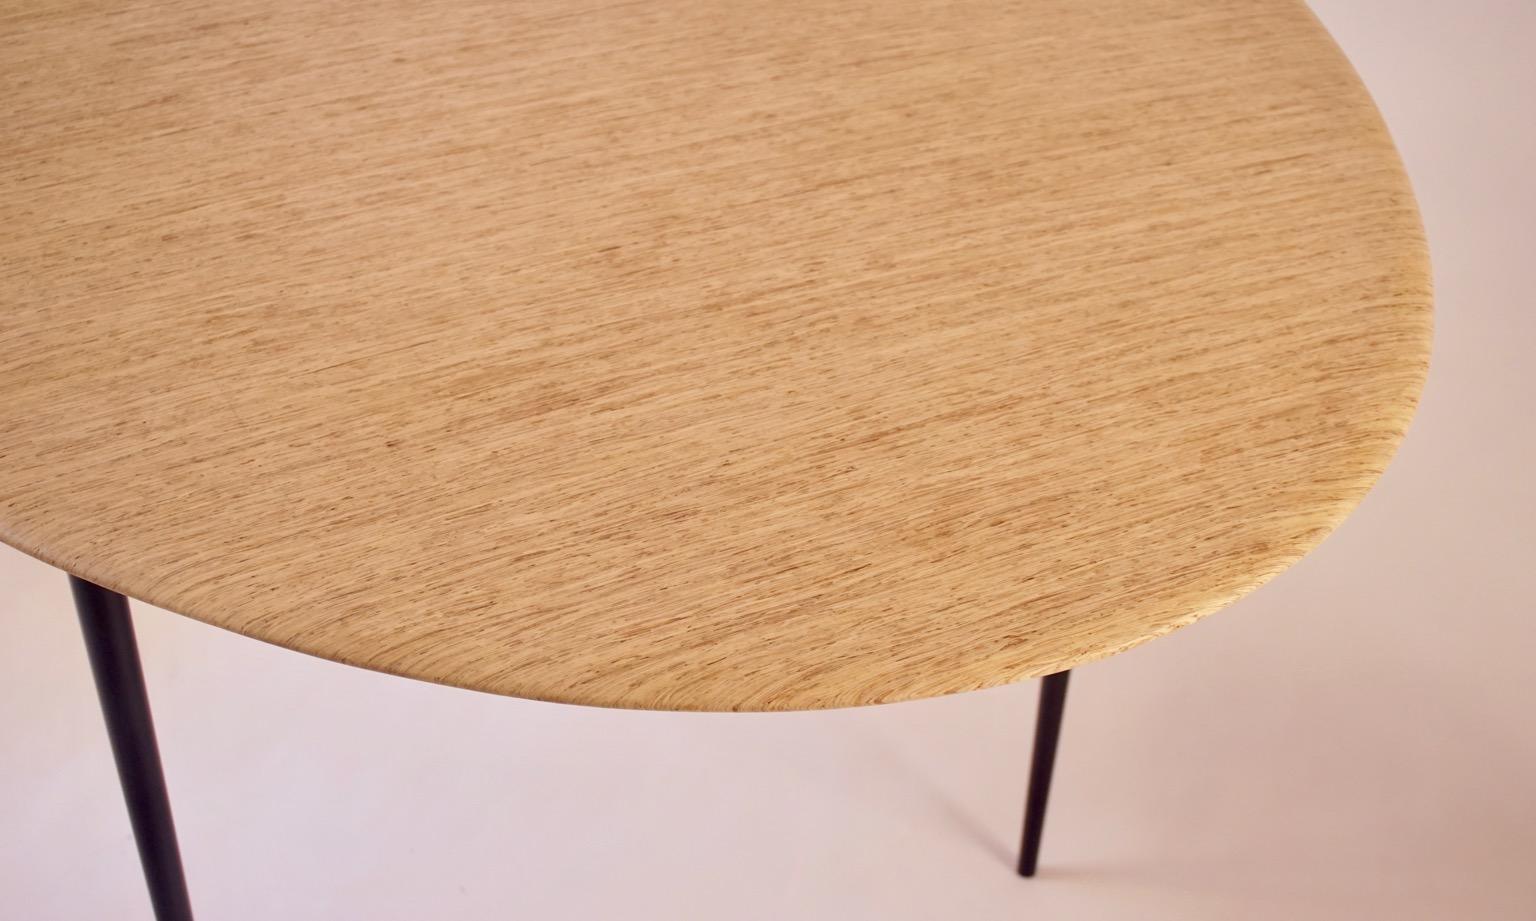 L'une des premières créations de Lehrecke en 1993, cette version ovale de la table à œufs est tout à fait unique. La grande taille et le sommet en bois sont tous deux très inhabituels. Les brins de bois sont un matériau de construction, utilisé dans